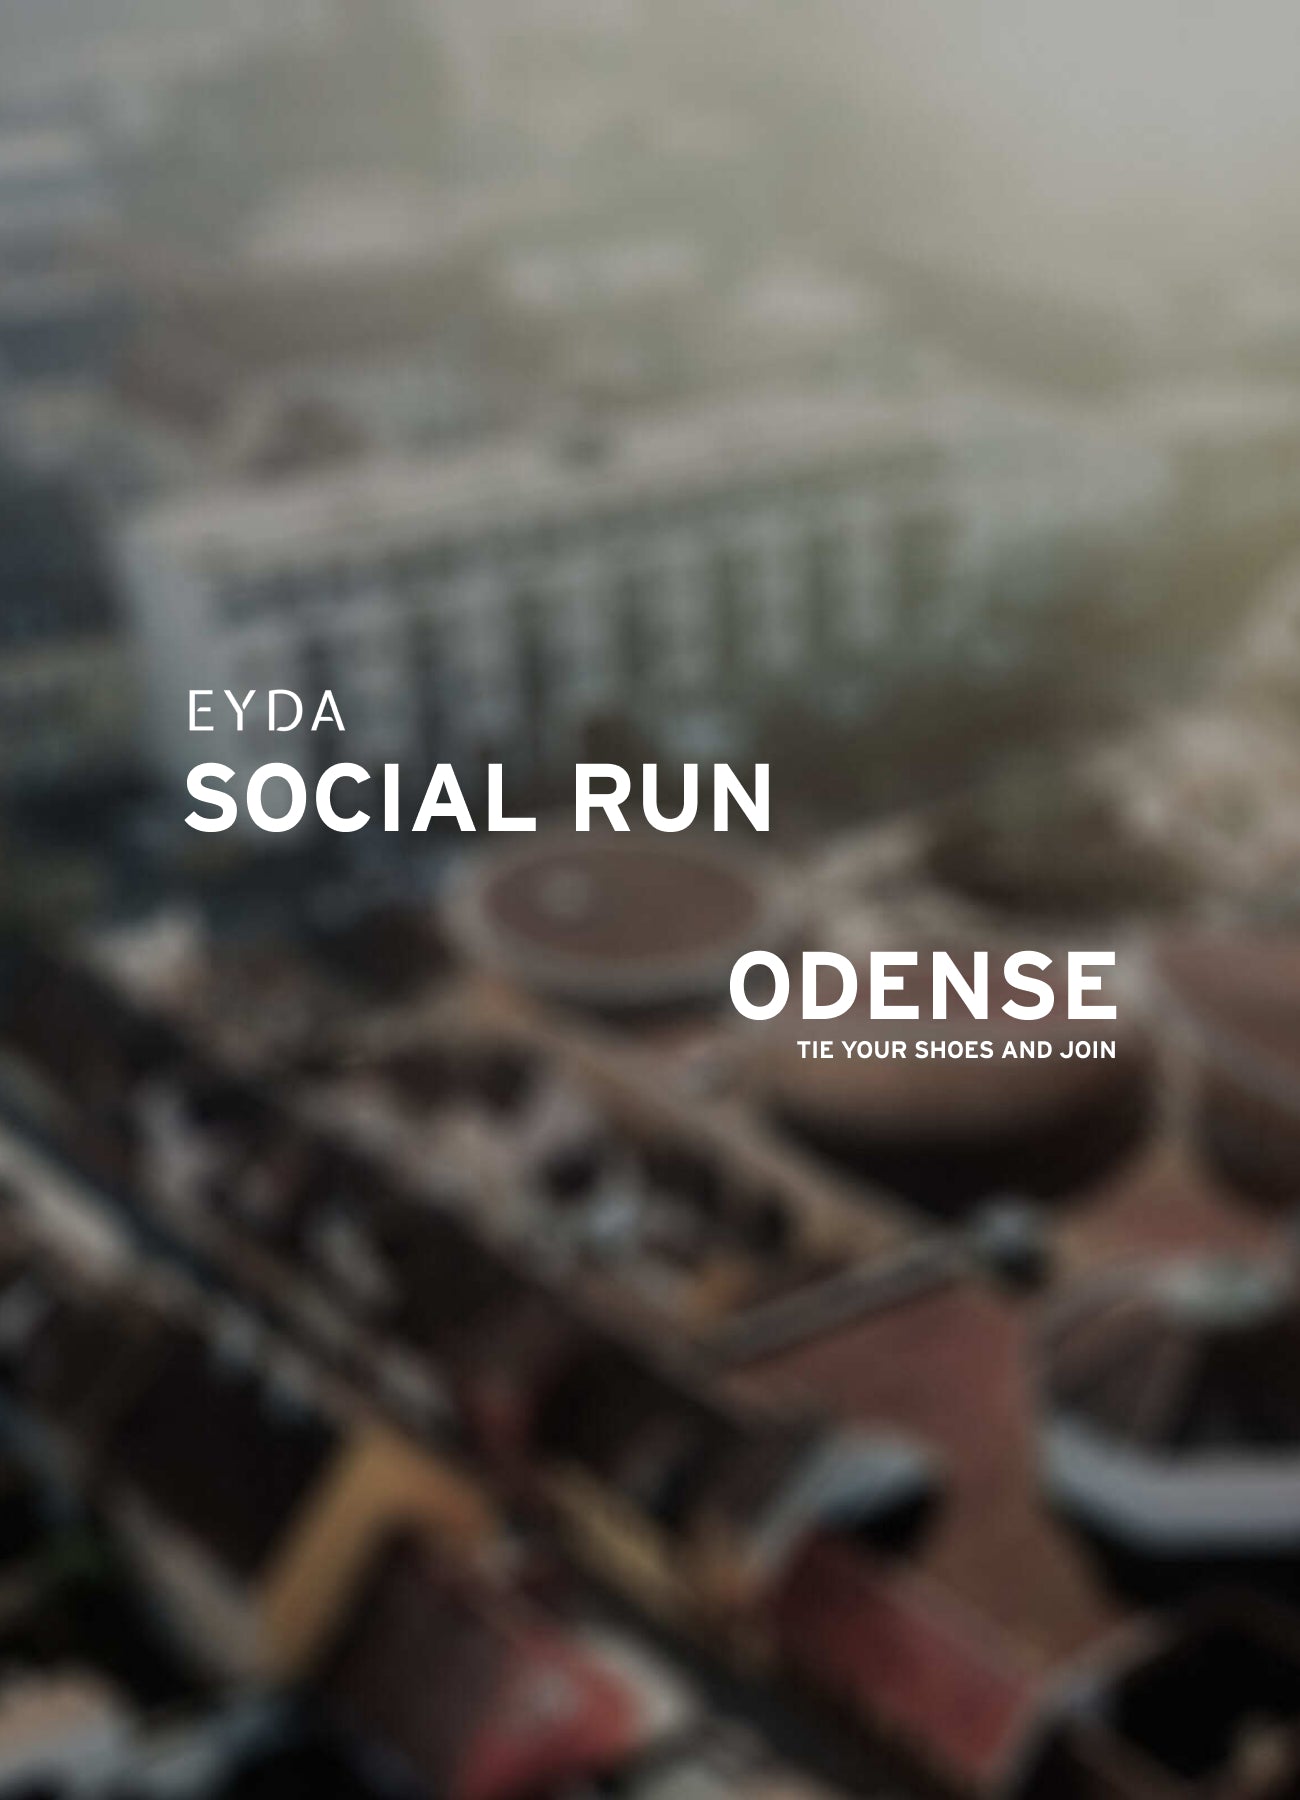 EYDA SOCIAL RUN Odense